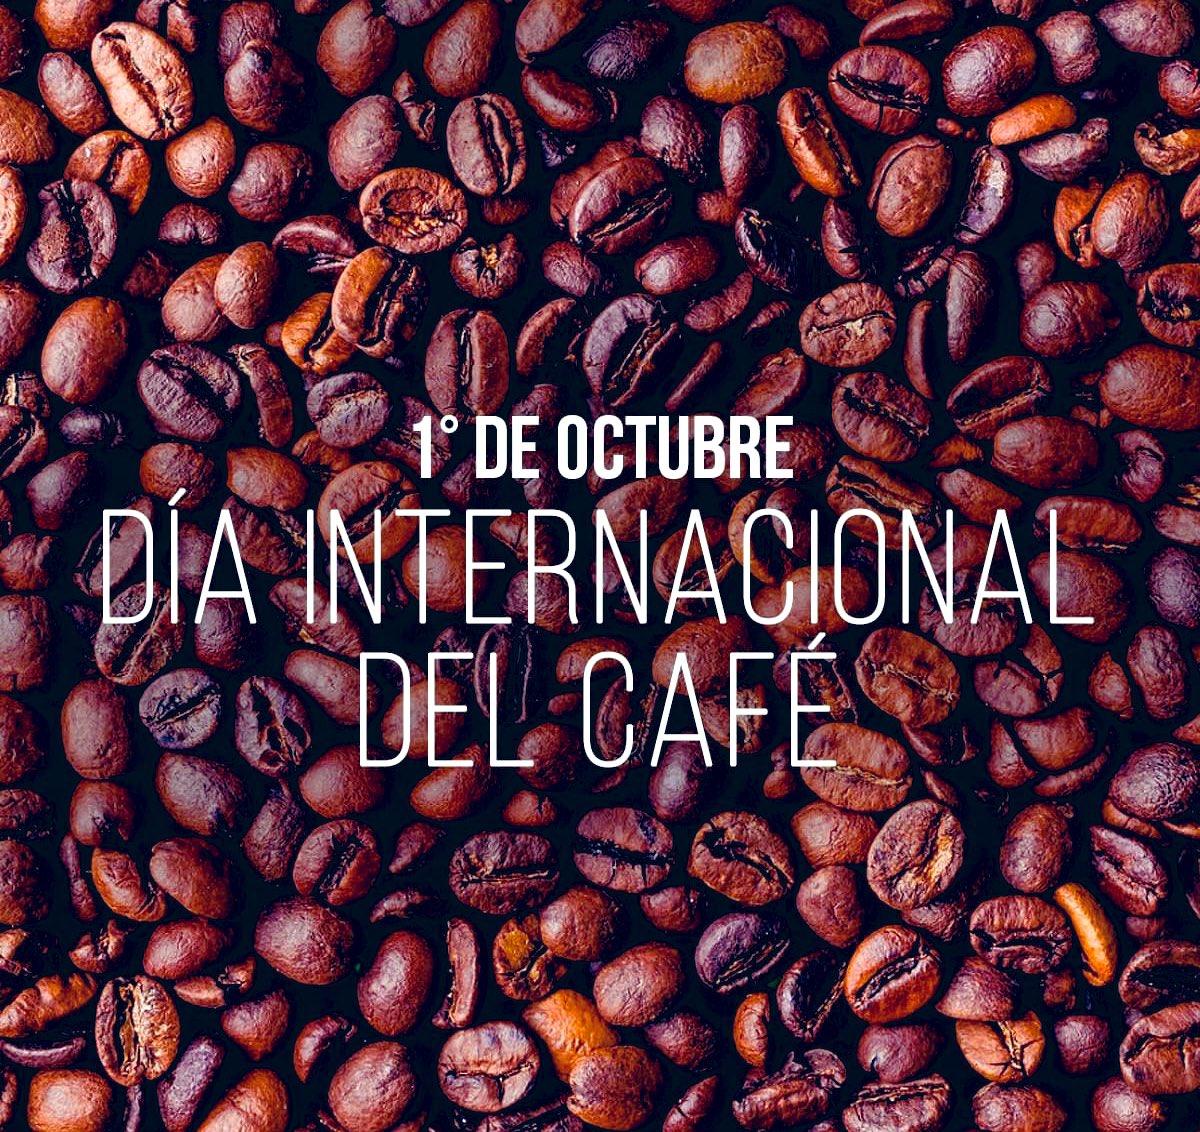 Bonito día ☀️☕️♥️  #Domingo 
#DiaInternacionalDelCafé